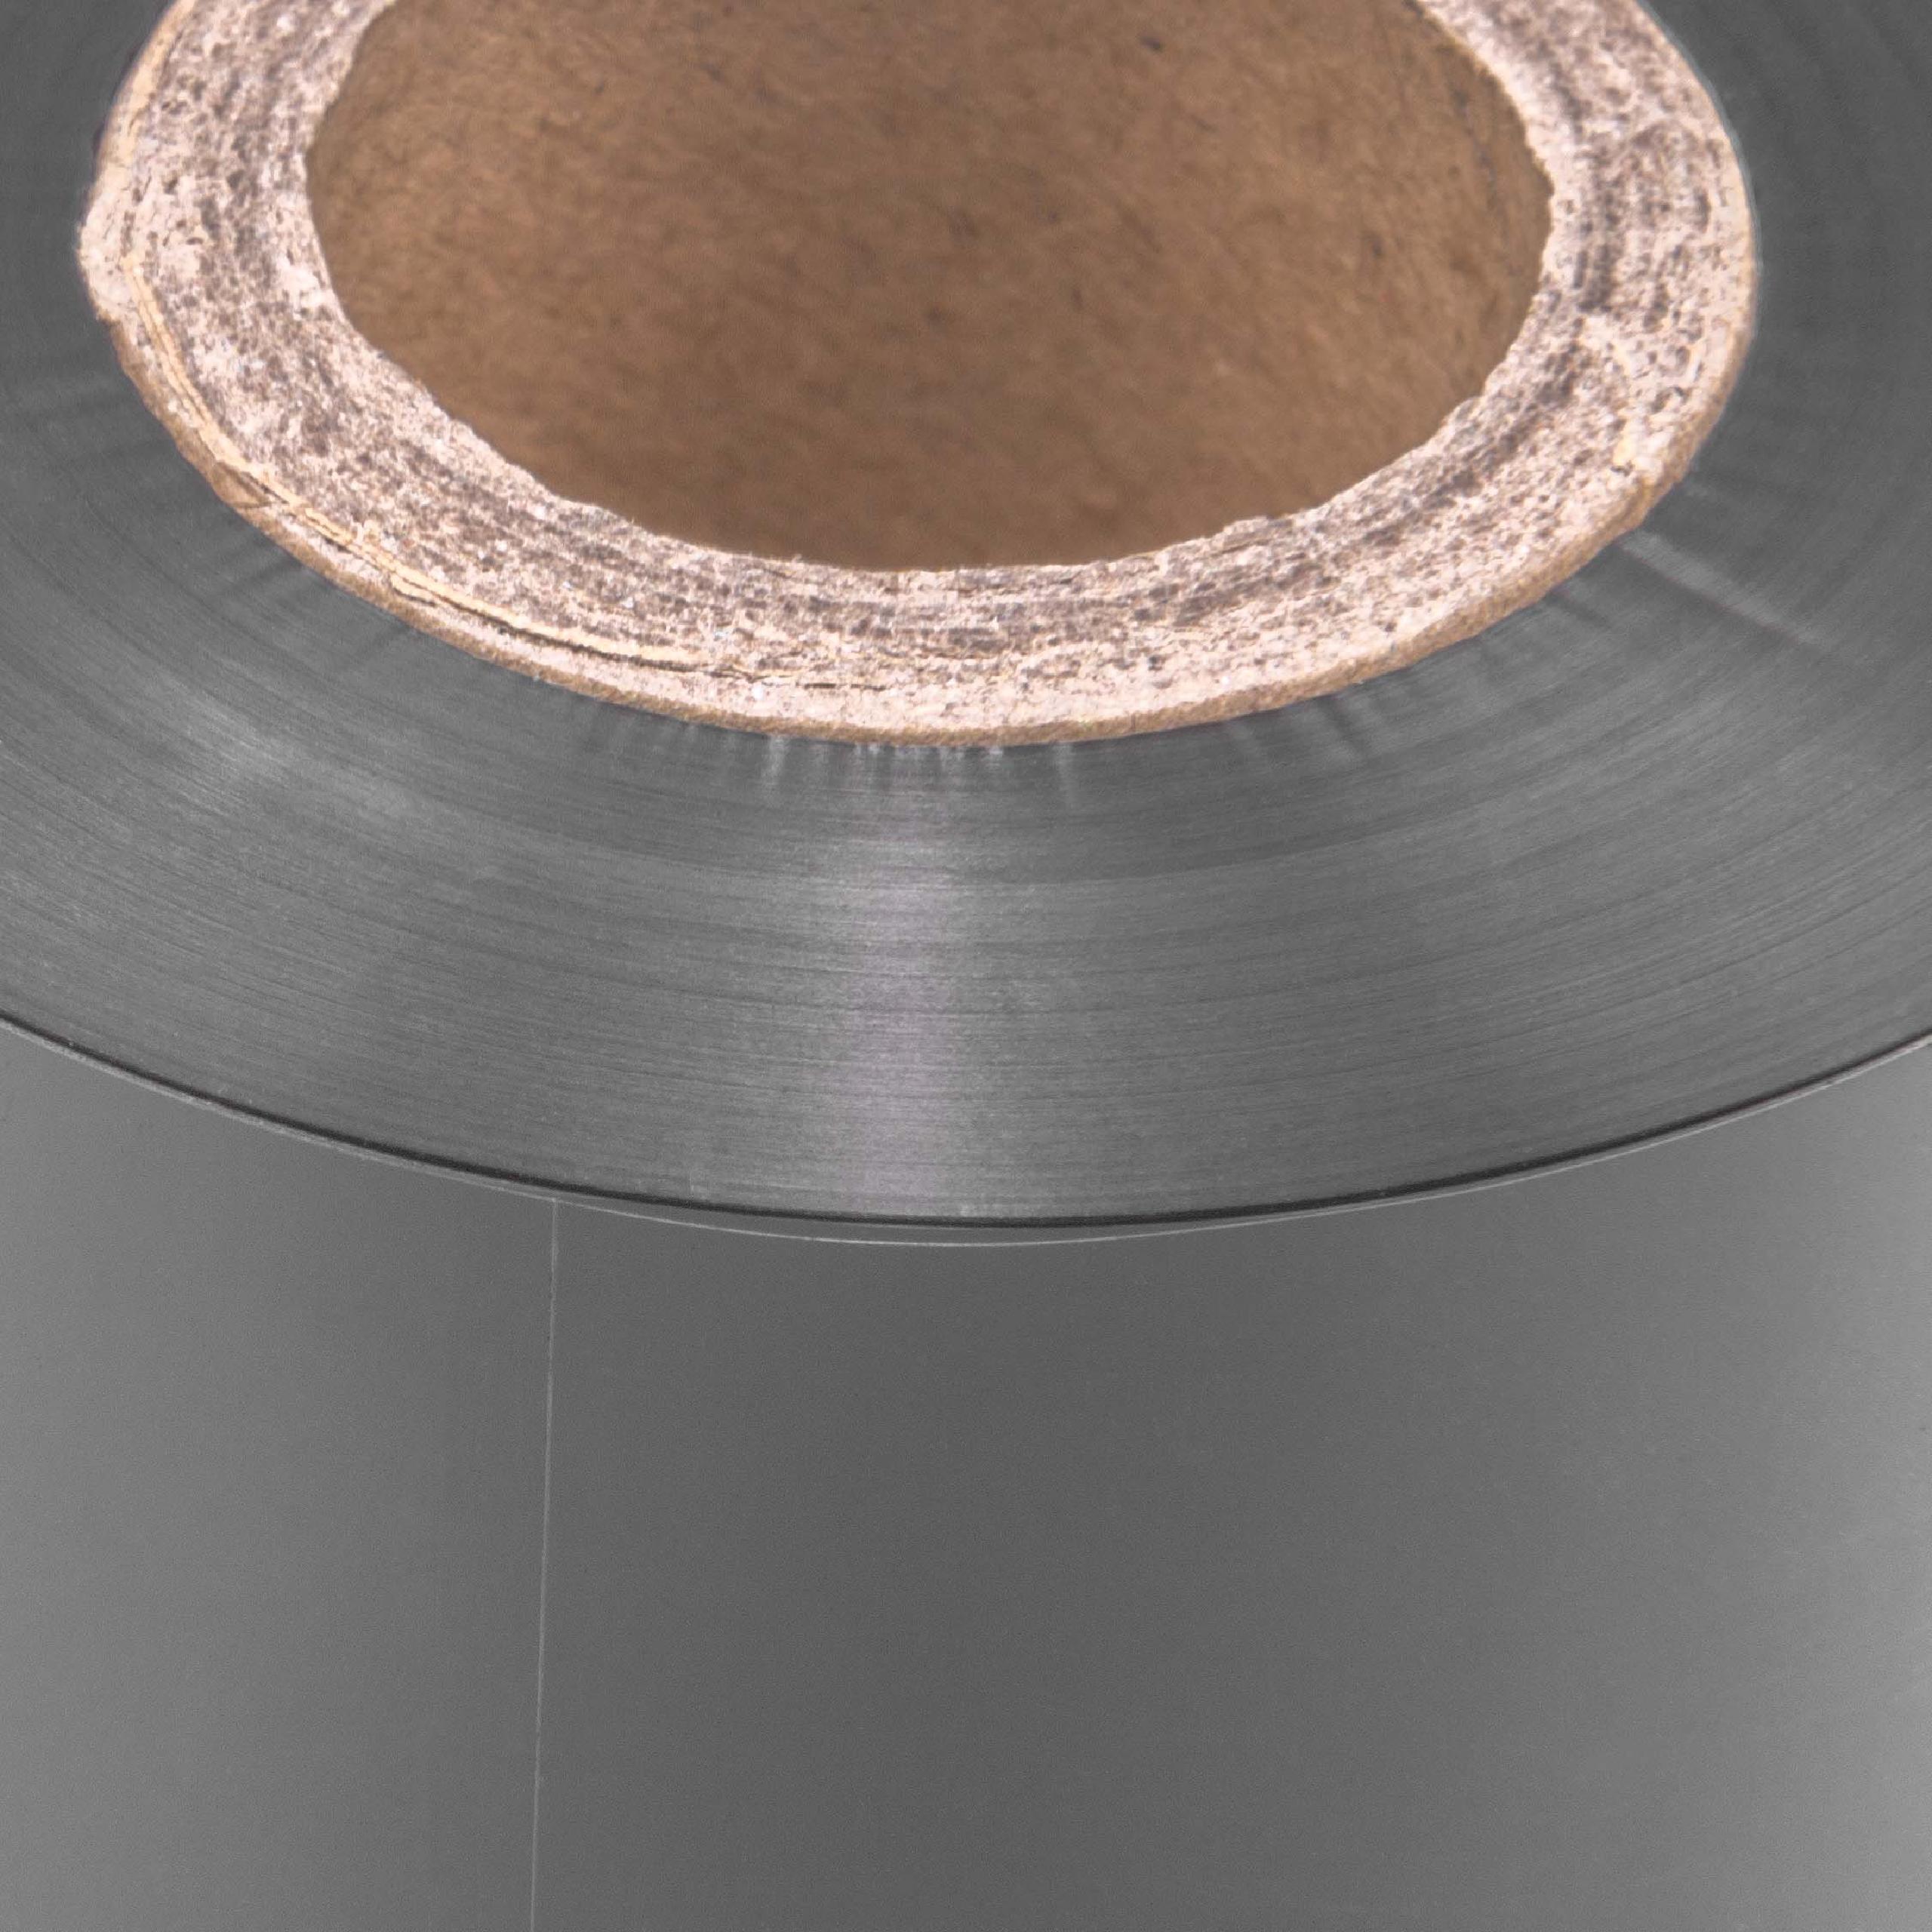 Taśma termotransferowa do drukarki etykiet EZ-1100 Plus Godex - 70 mm x 300 m, woskowo-żywiczna 